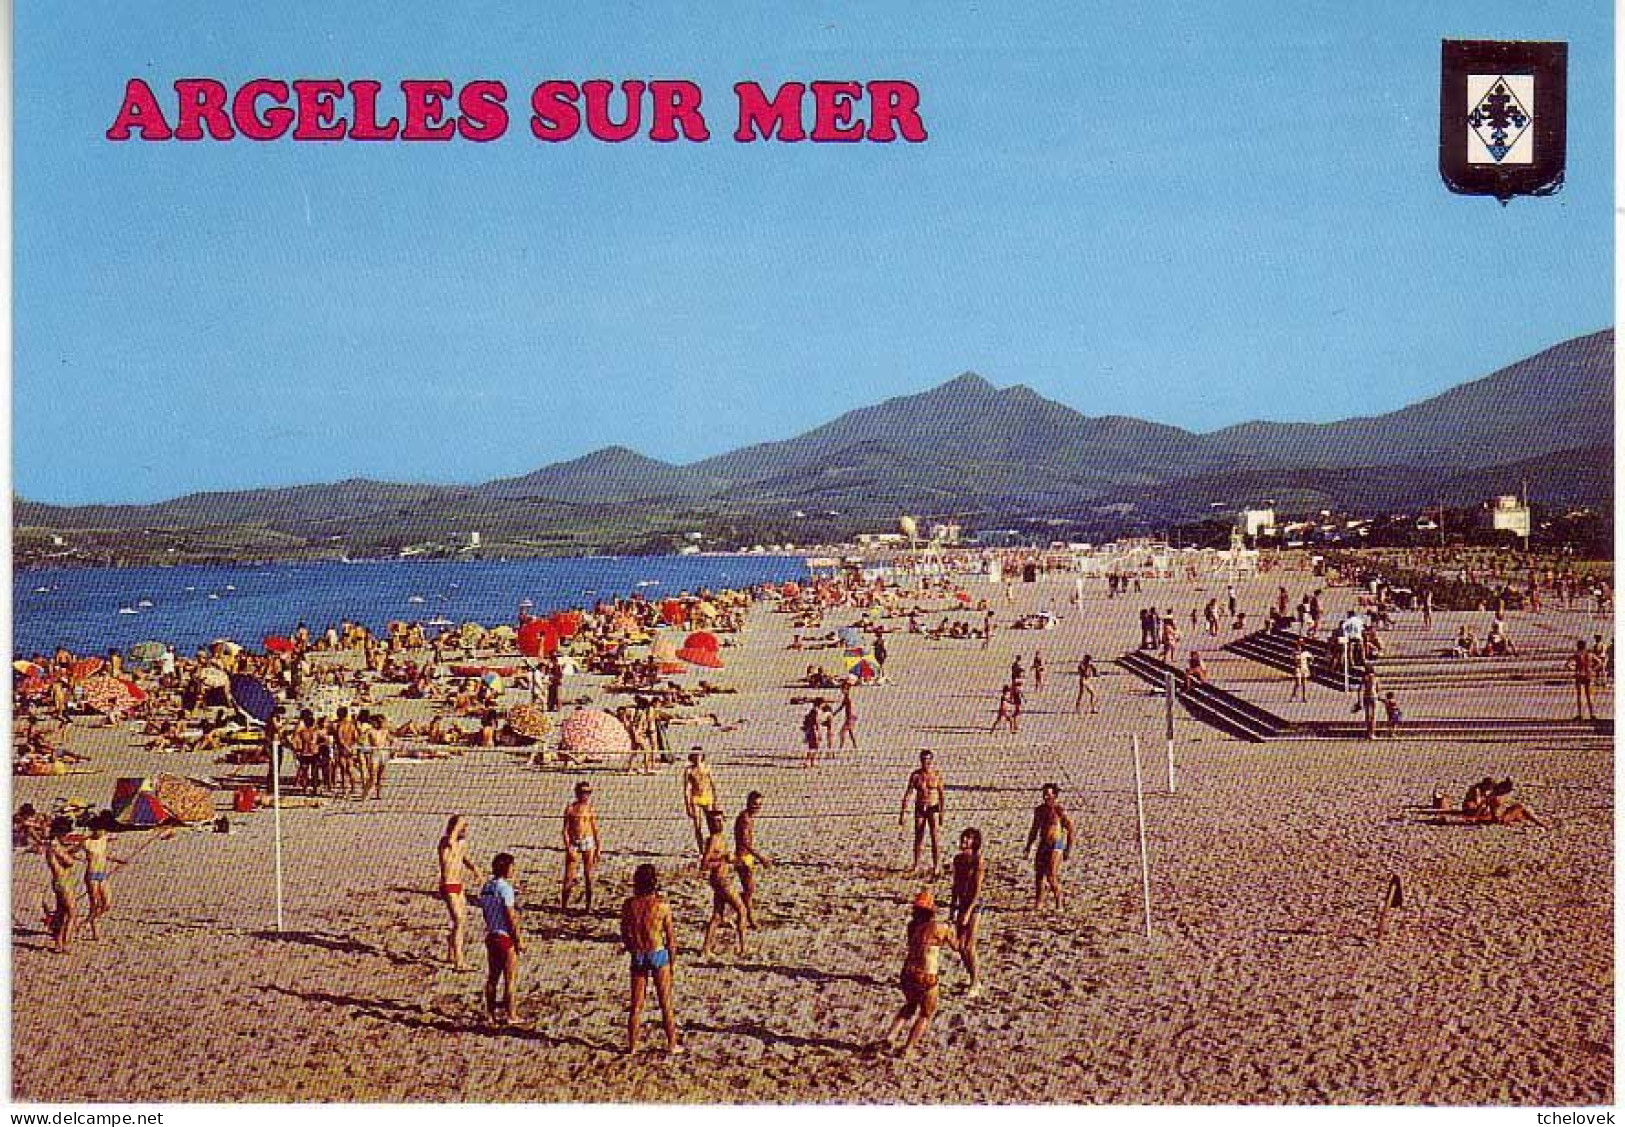 (66). Argeles Sur Mer (2). Plage Des Albères 1980 & 1984 E La Plage & 2022E. Renault R16 DS Citroen - Argeles Sur Mer